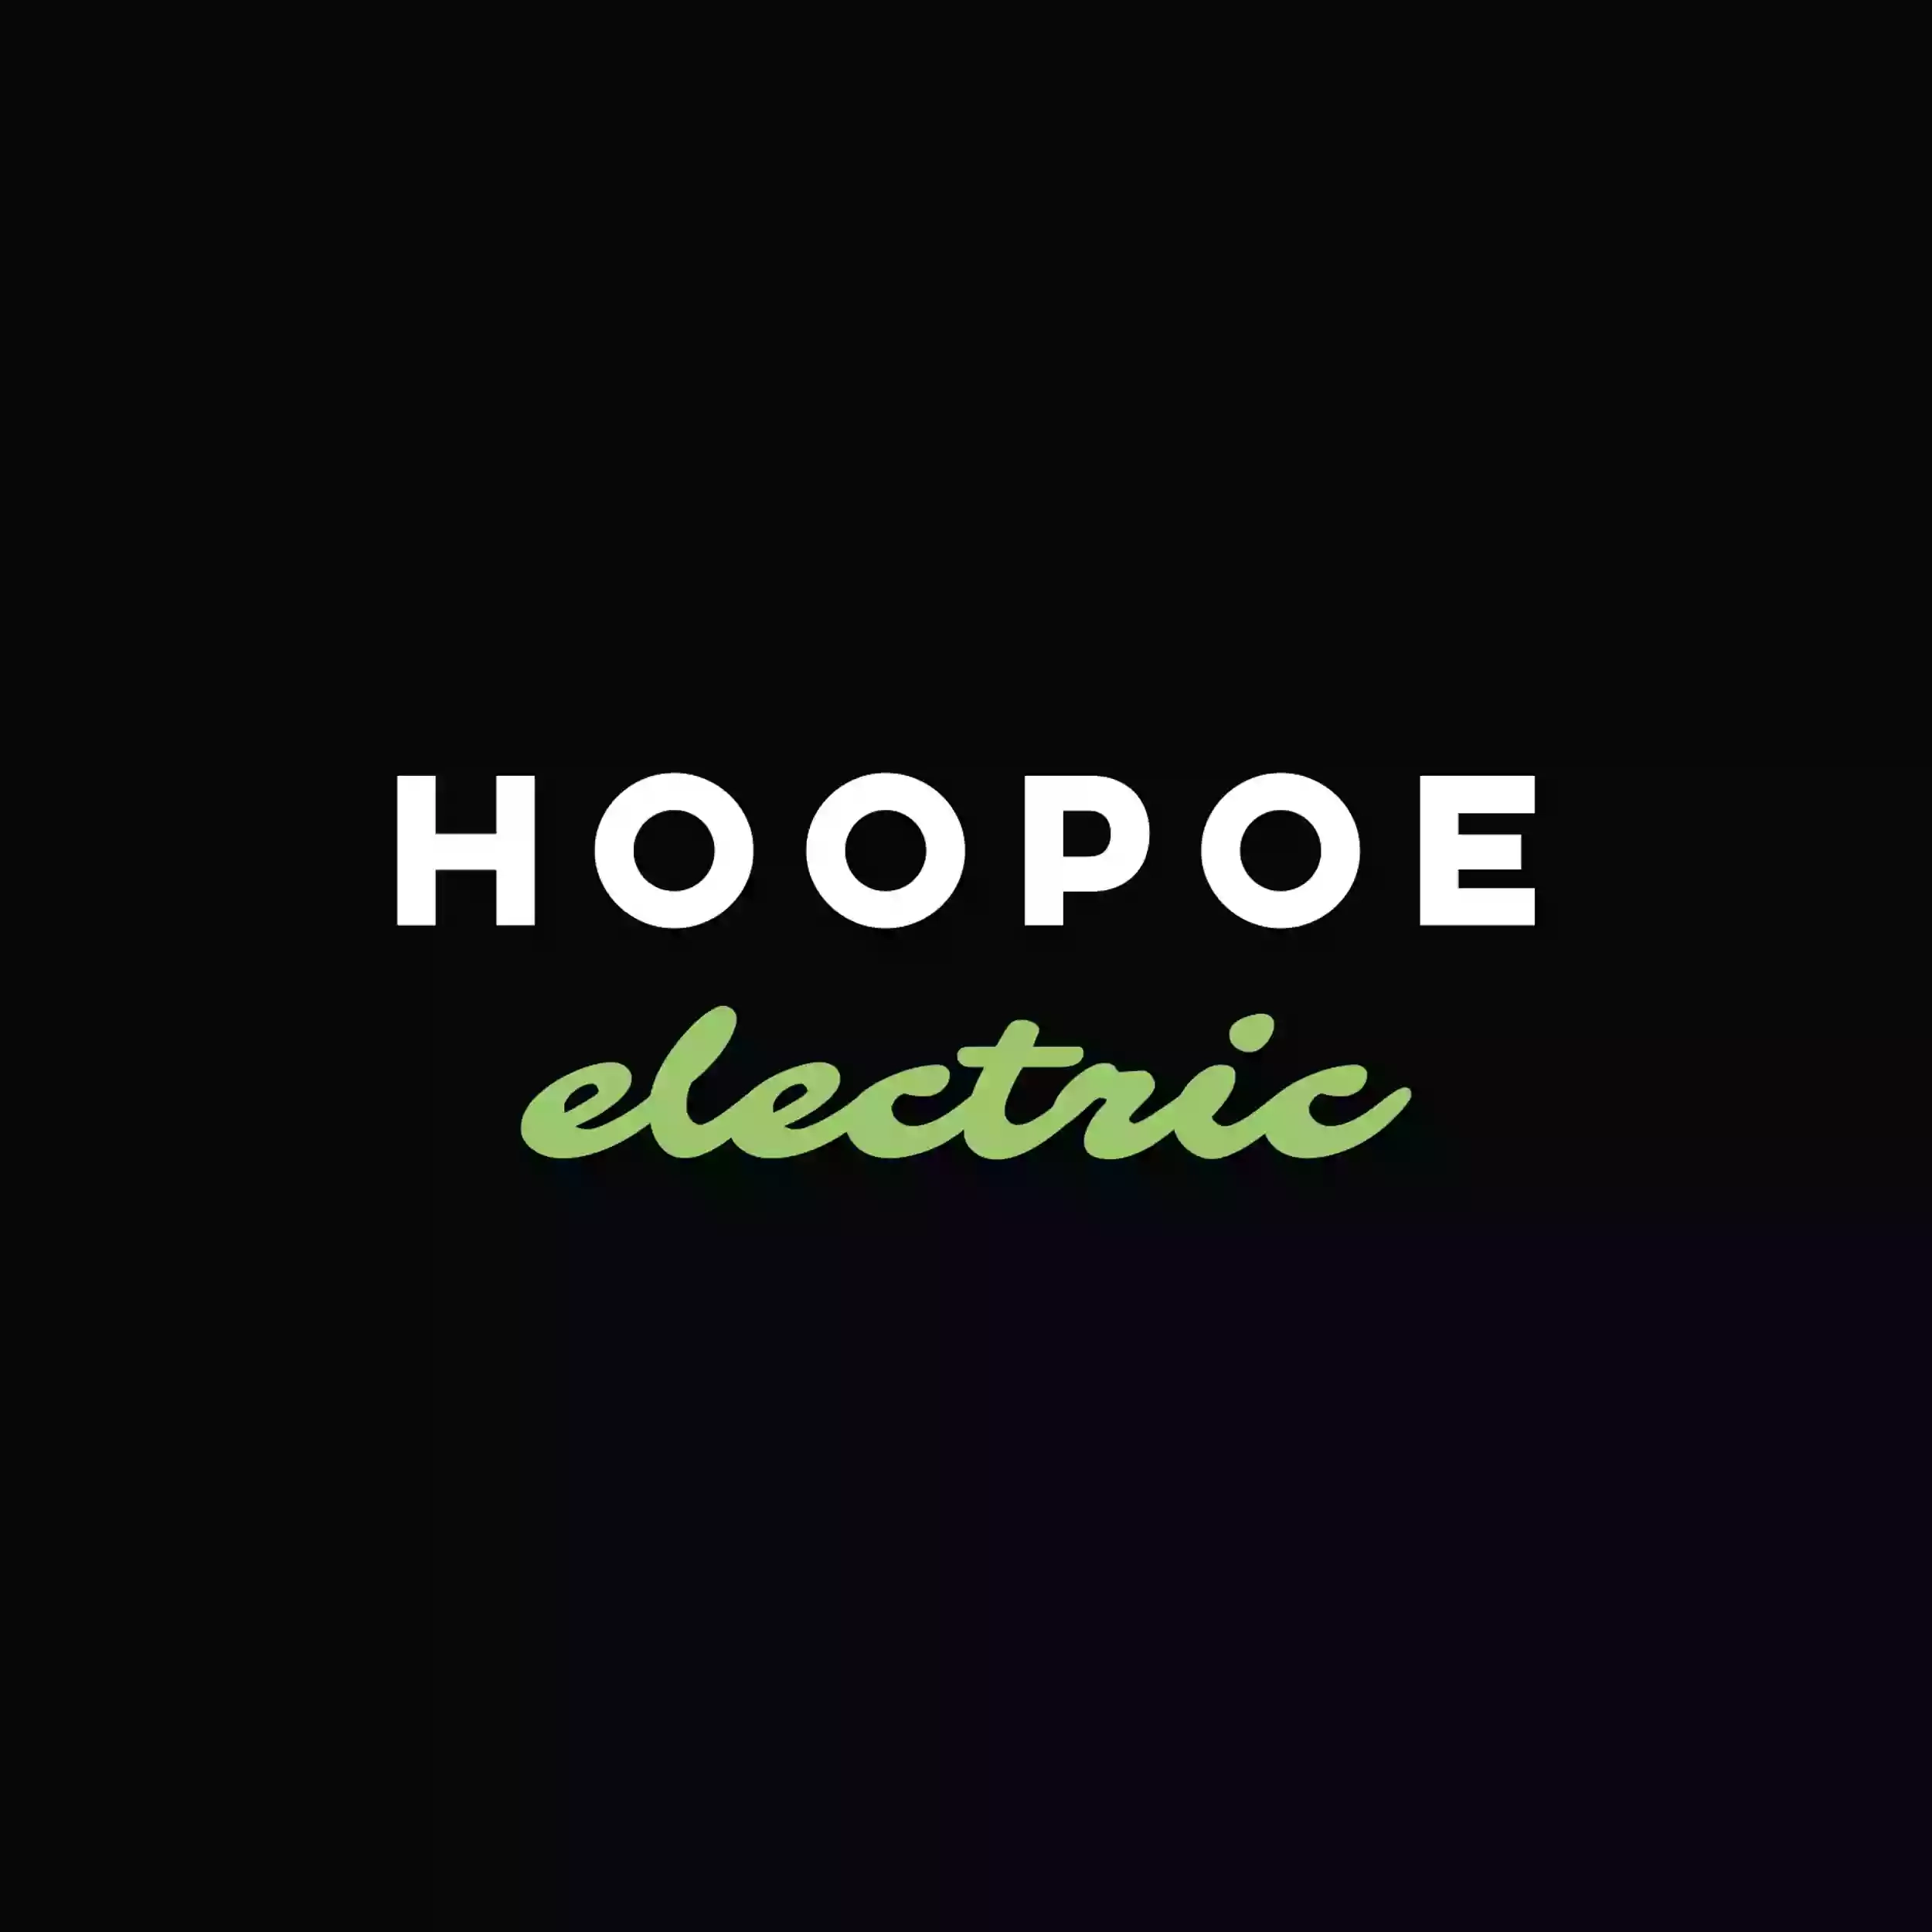 Hoopoe Electric Ltd